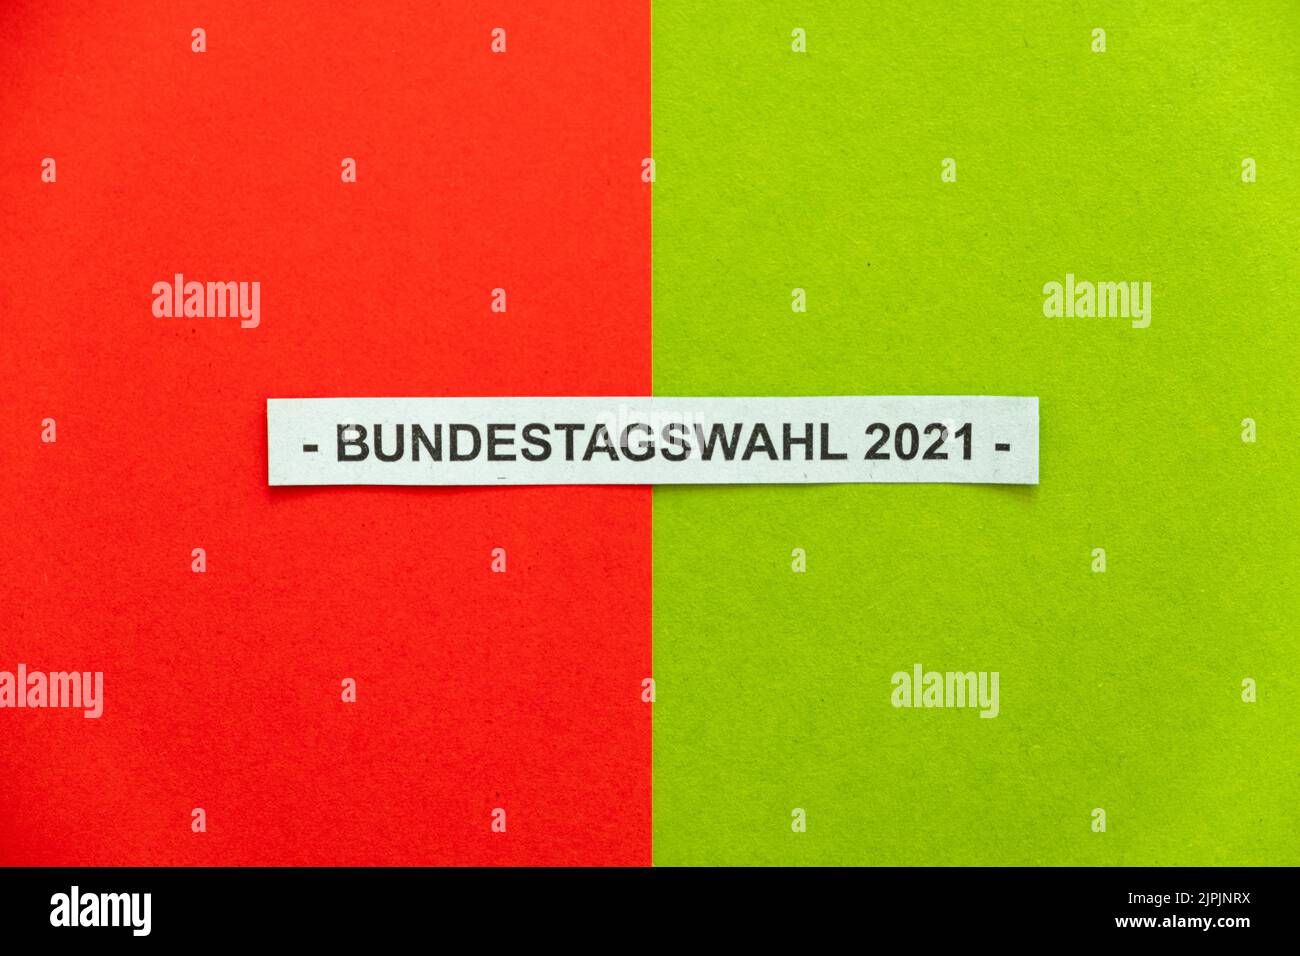 party, red green, coalition, federal election, 2021, sozialdemokratische partei deutschlands, politische farbe, bündnis 90/die grünen, parties, Stock Photo